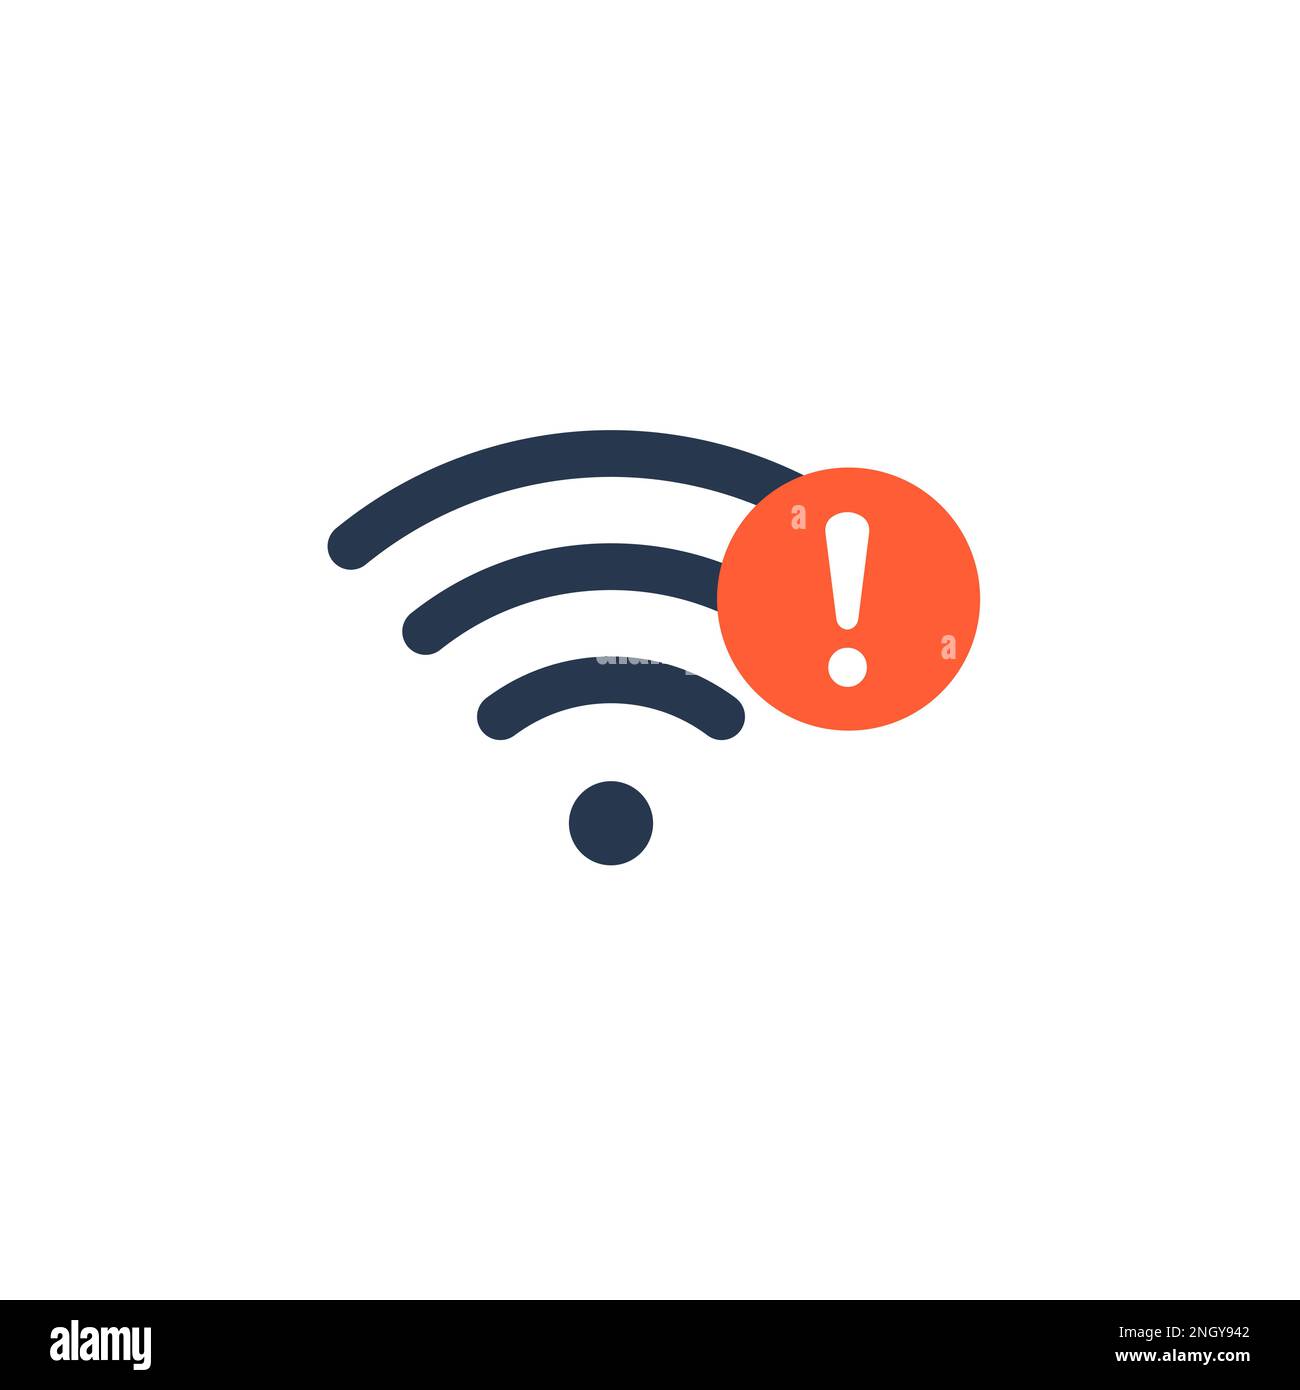 Bad wifi signal Banque d'images détourées - Page 2 - Alamy